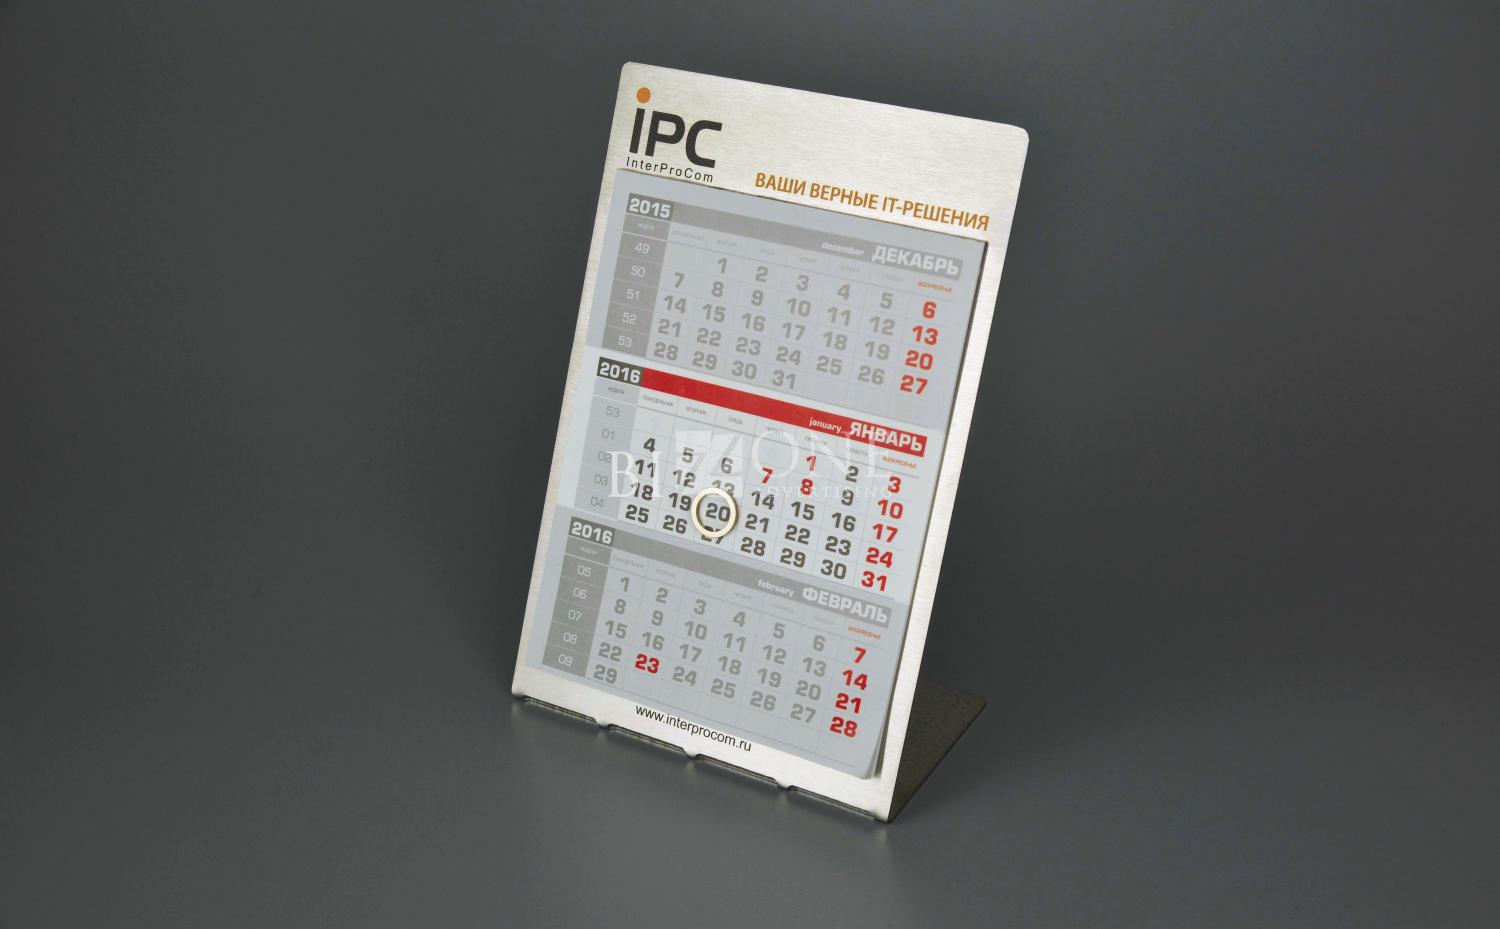 Металлические календари IPC. Фотография готового календаря